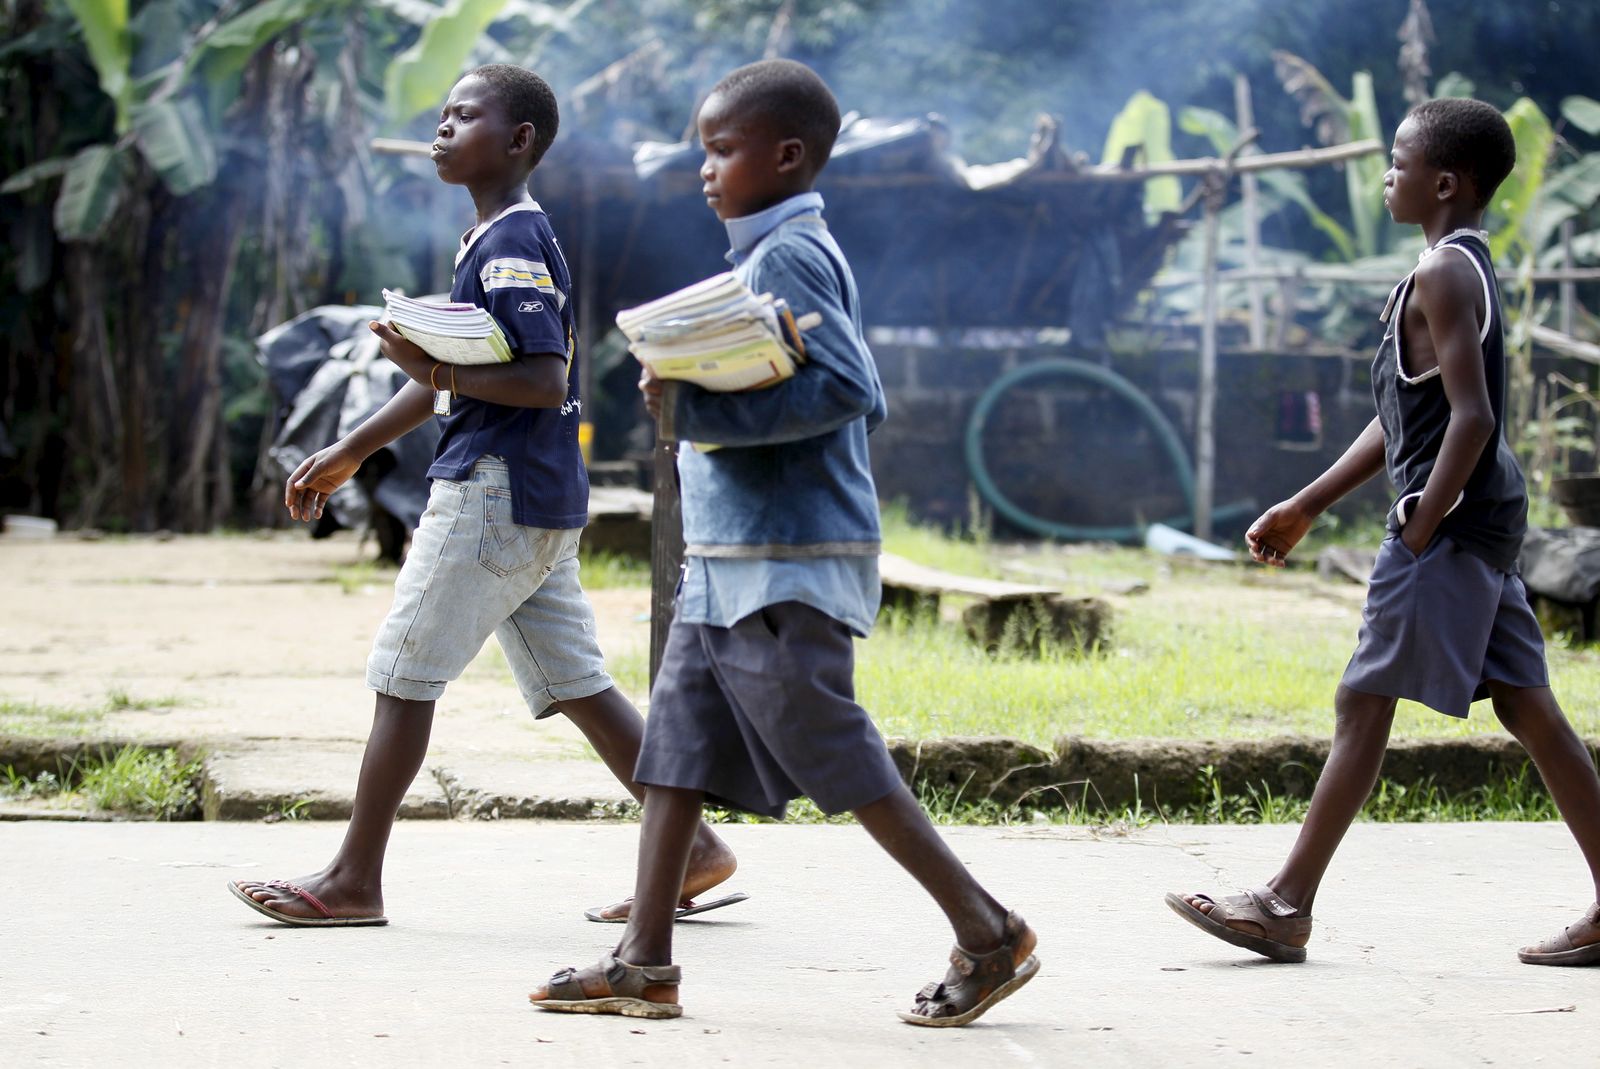 أطفال يعودون من المدرسة في الصباح في منطقة دلتا بنيجيريا خلال تصاعد عمليات الاختطاف في 2015 - REUTERS